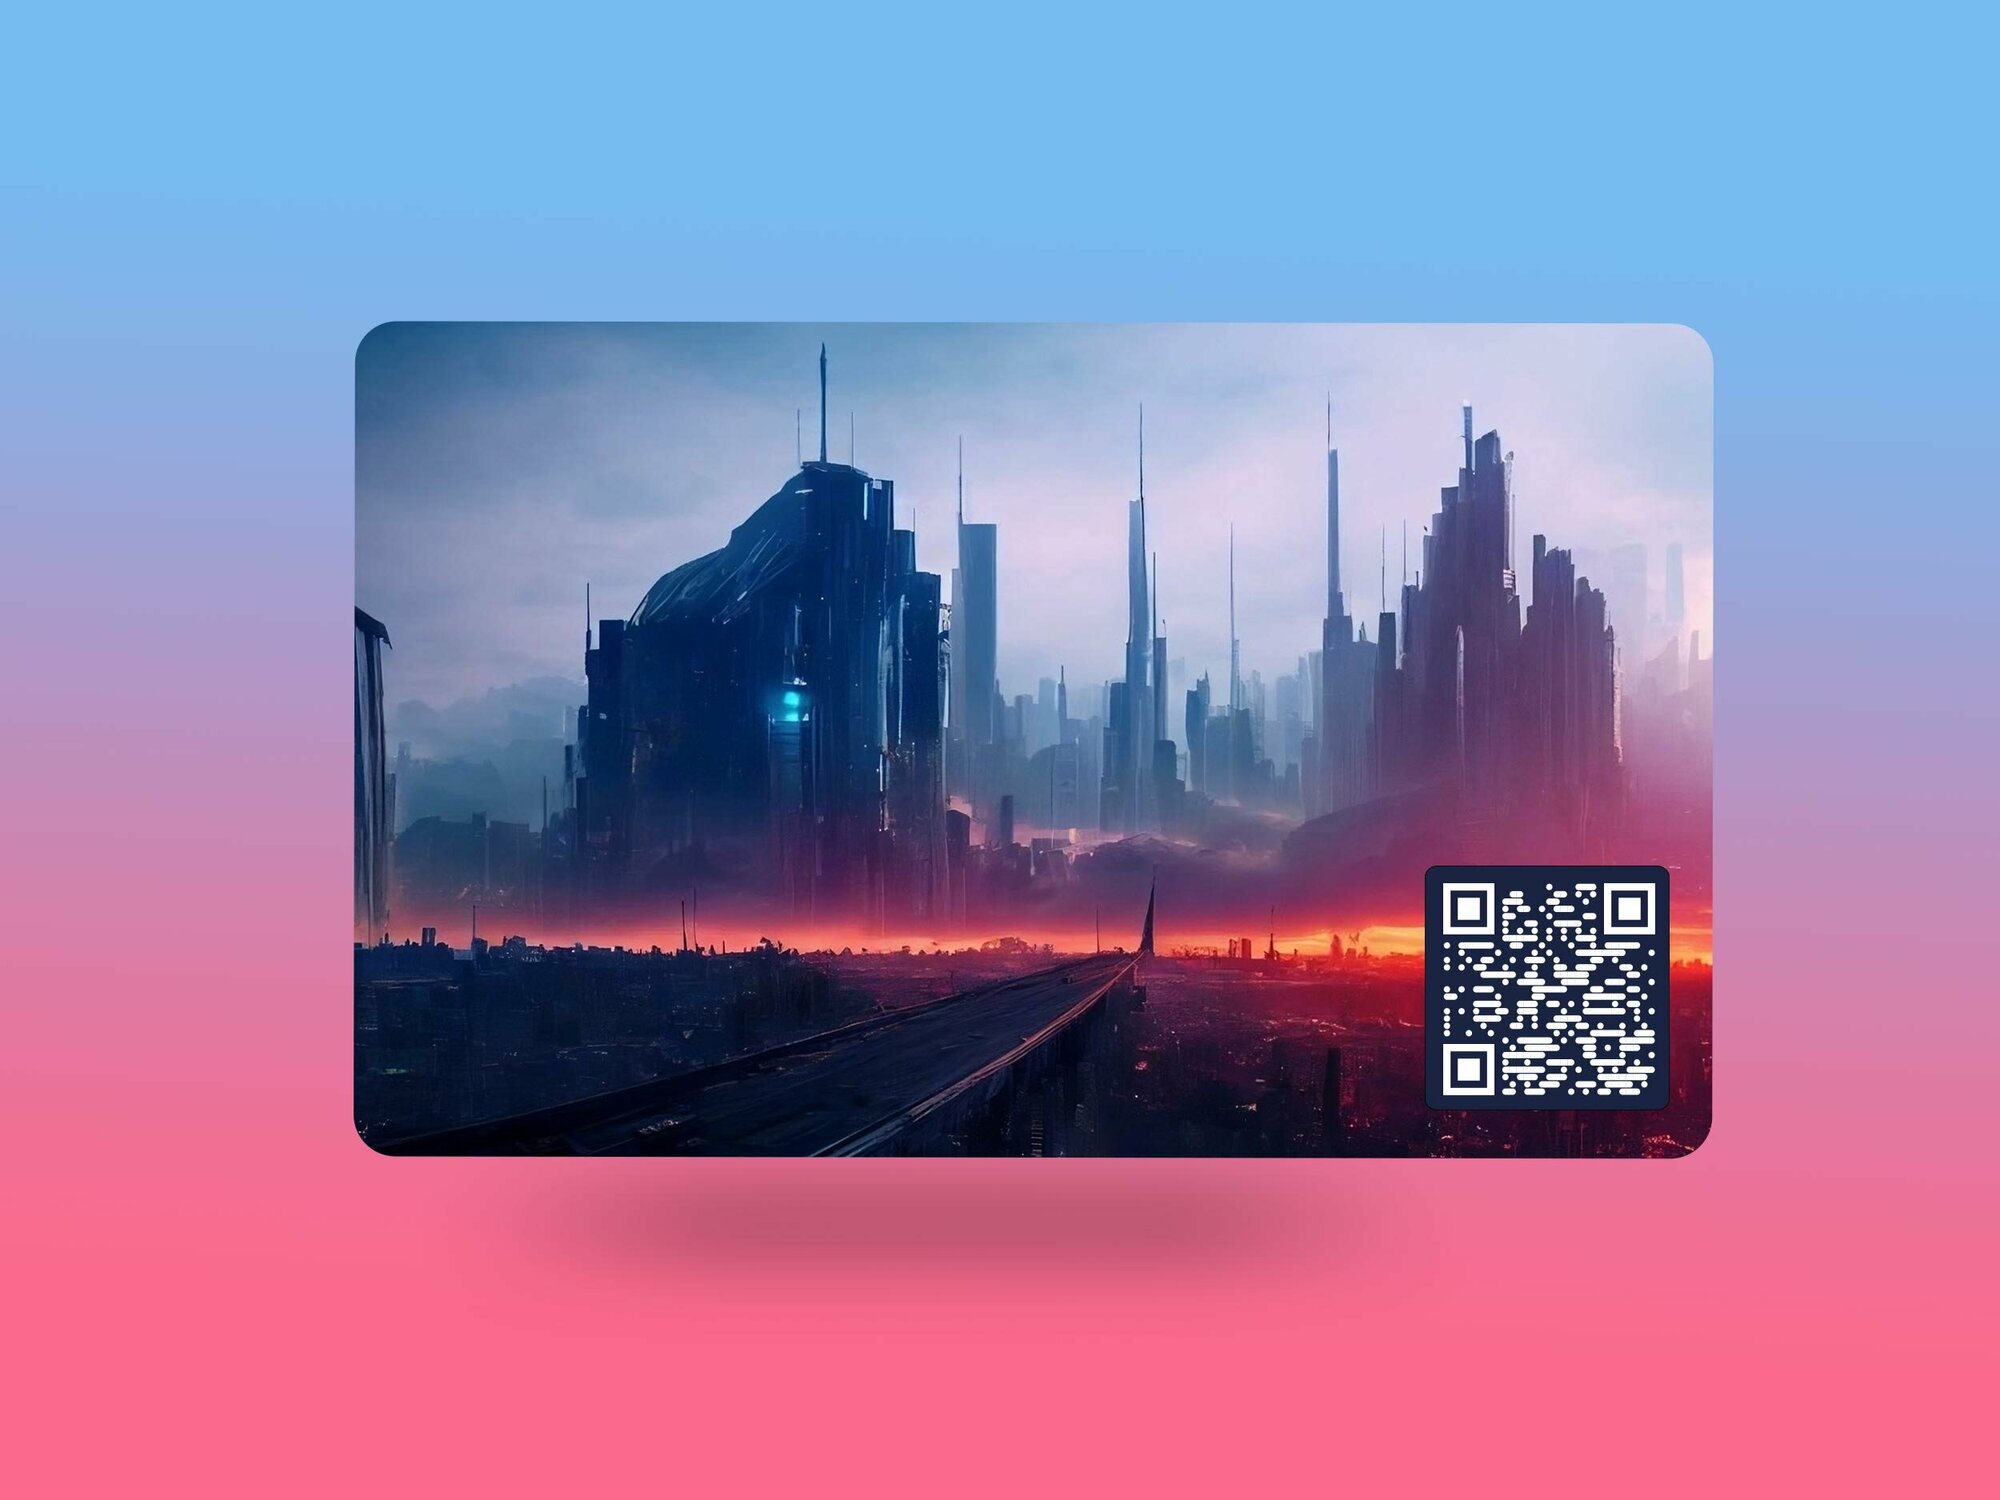 Умная электронная визитка на NFC-карте с виртуальной картой (Cyber Punk)